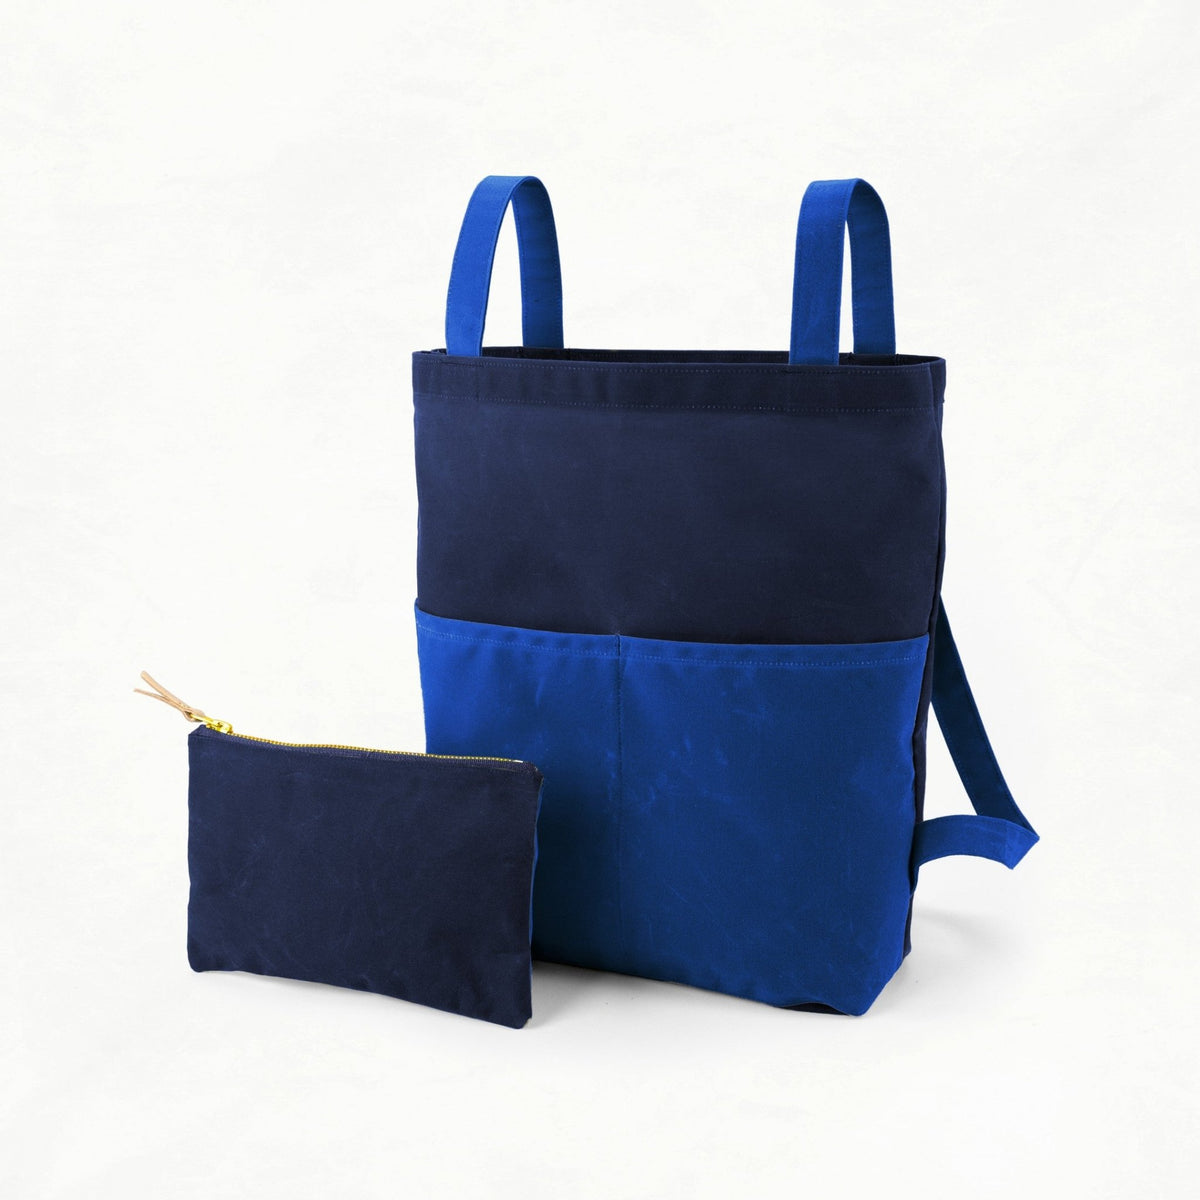 Belmont - Navy Bag Maker Kit - BEL - NAVY - COB - Maker Kit - Klum House